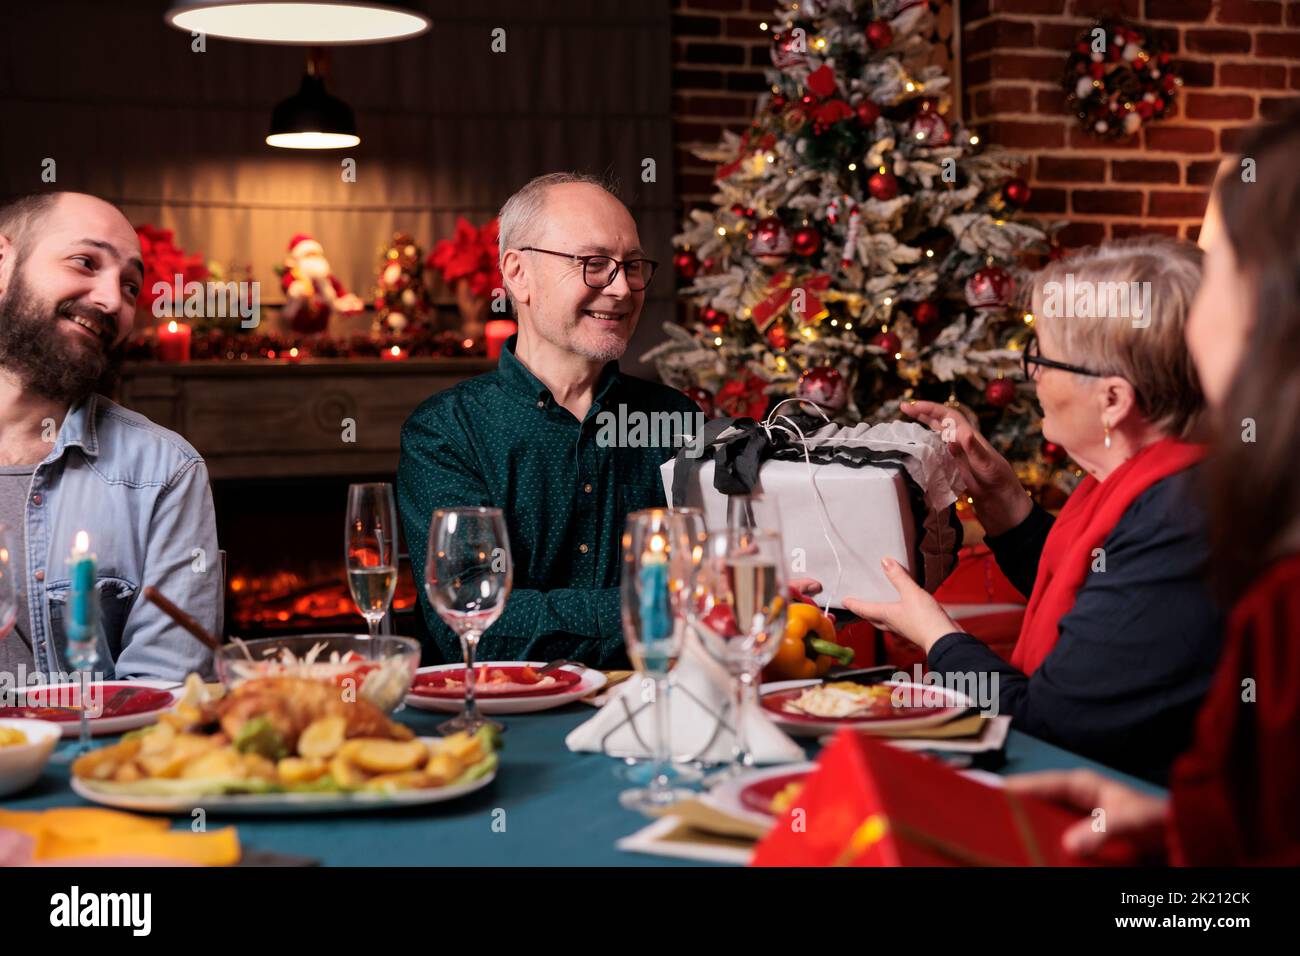 Famille célébrant noël, échanger des cadeaux à table festive, manger des plats traditionnels à la maison. Fête de Noël avec les parents, les personnes donnant des boîtes de cadeau Banque D'Images